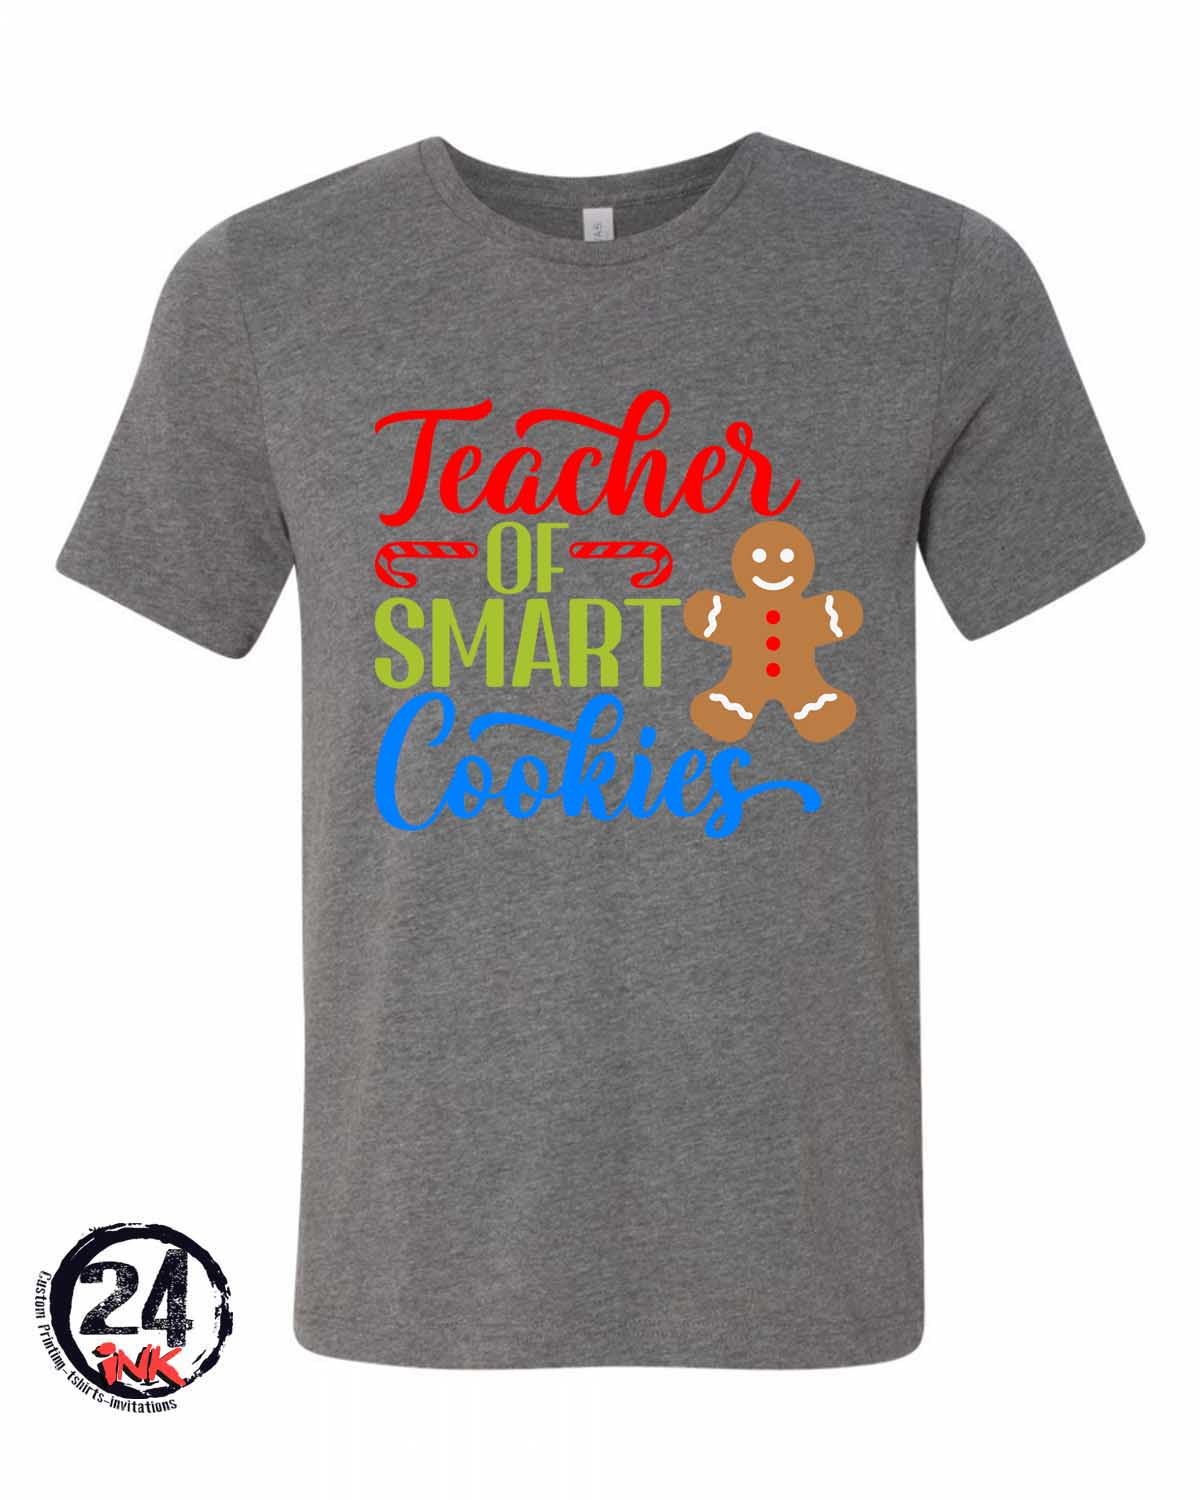 Teacher of smart cookies T-Shirt